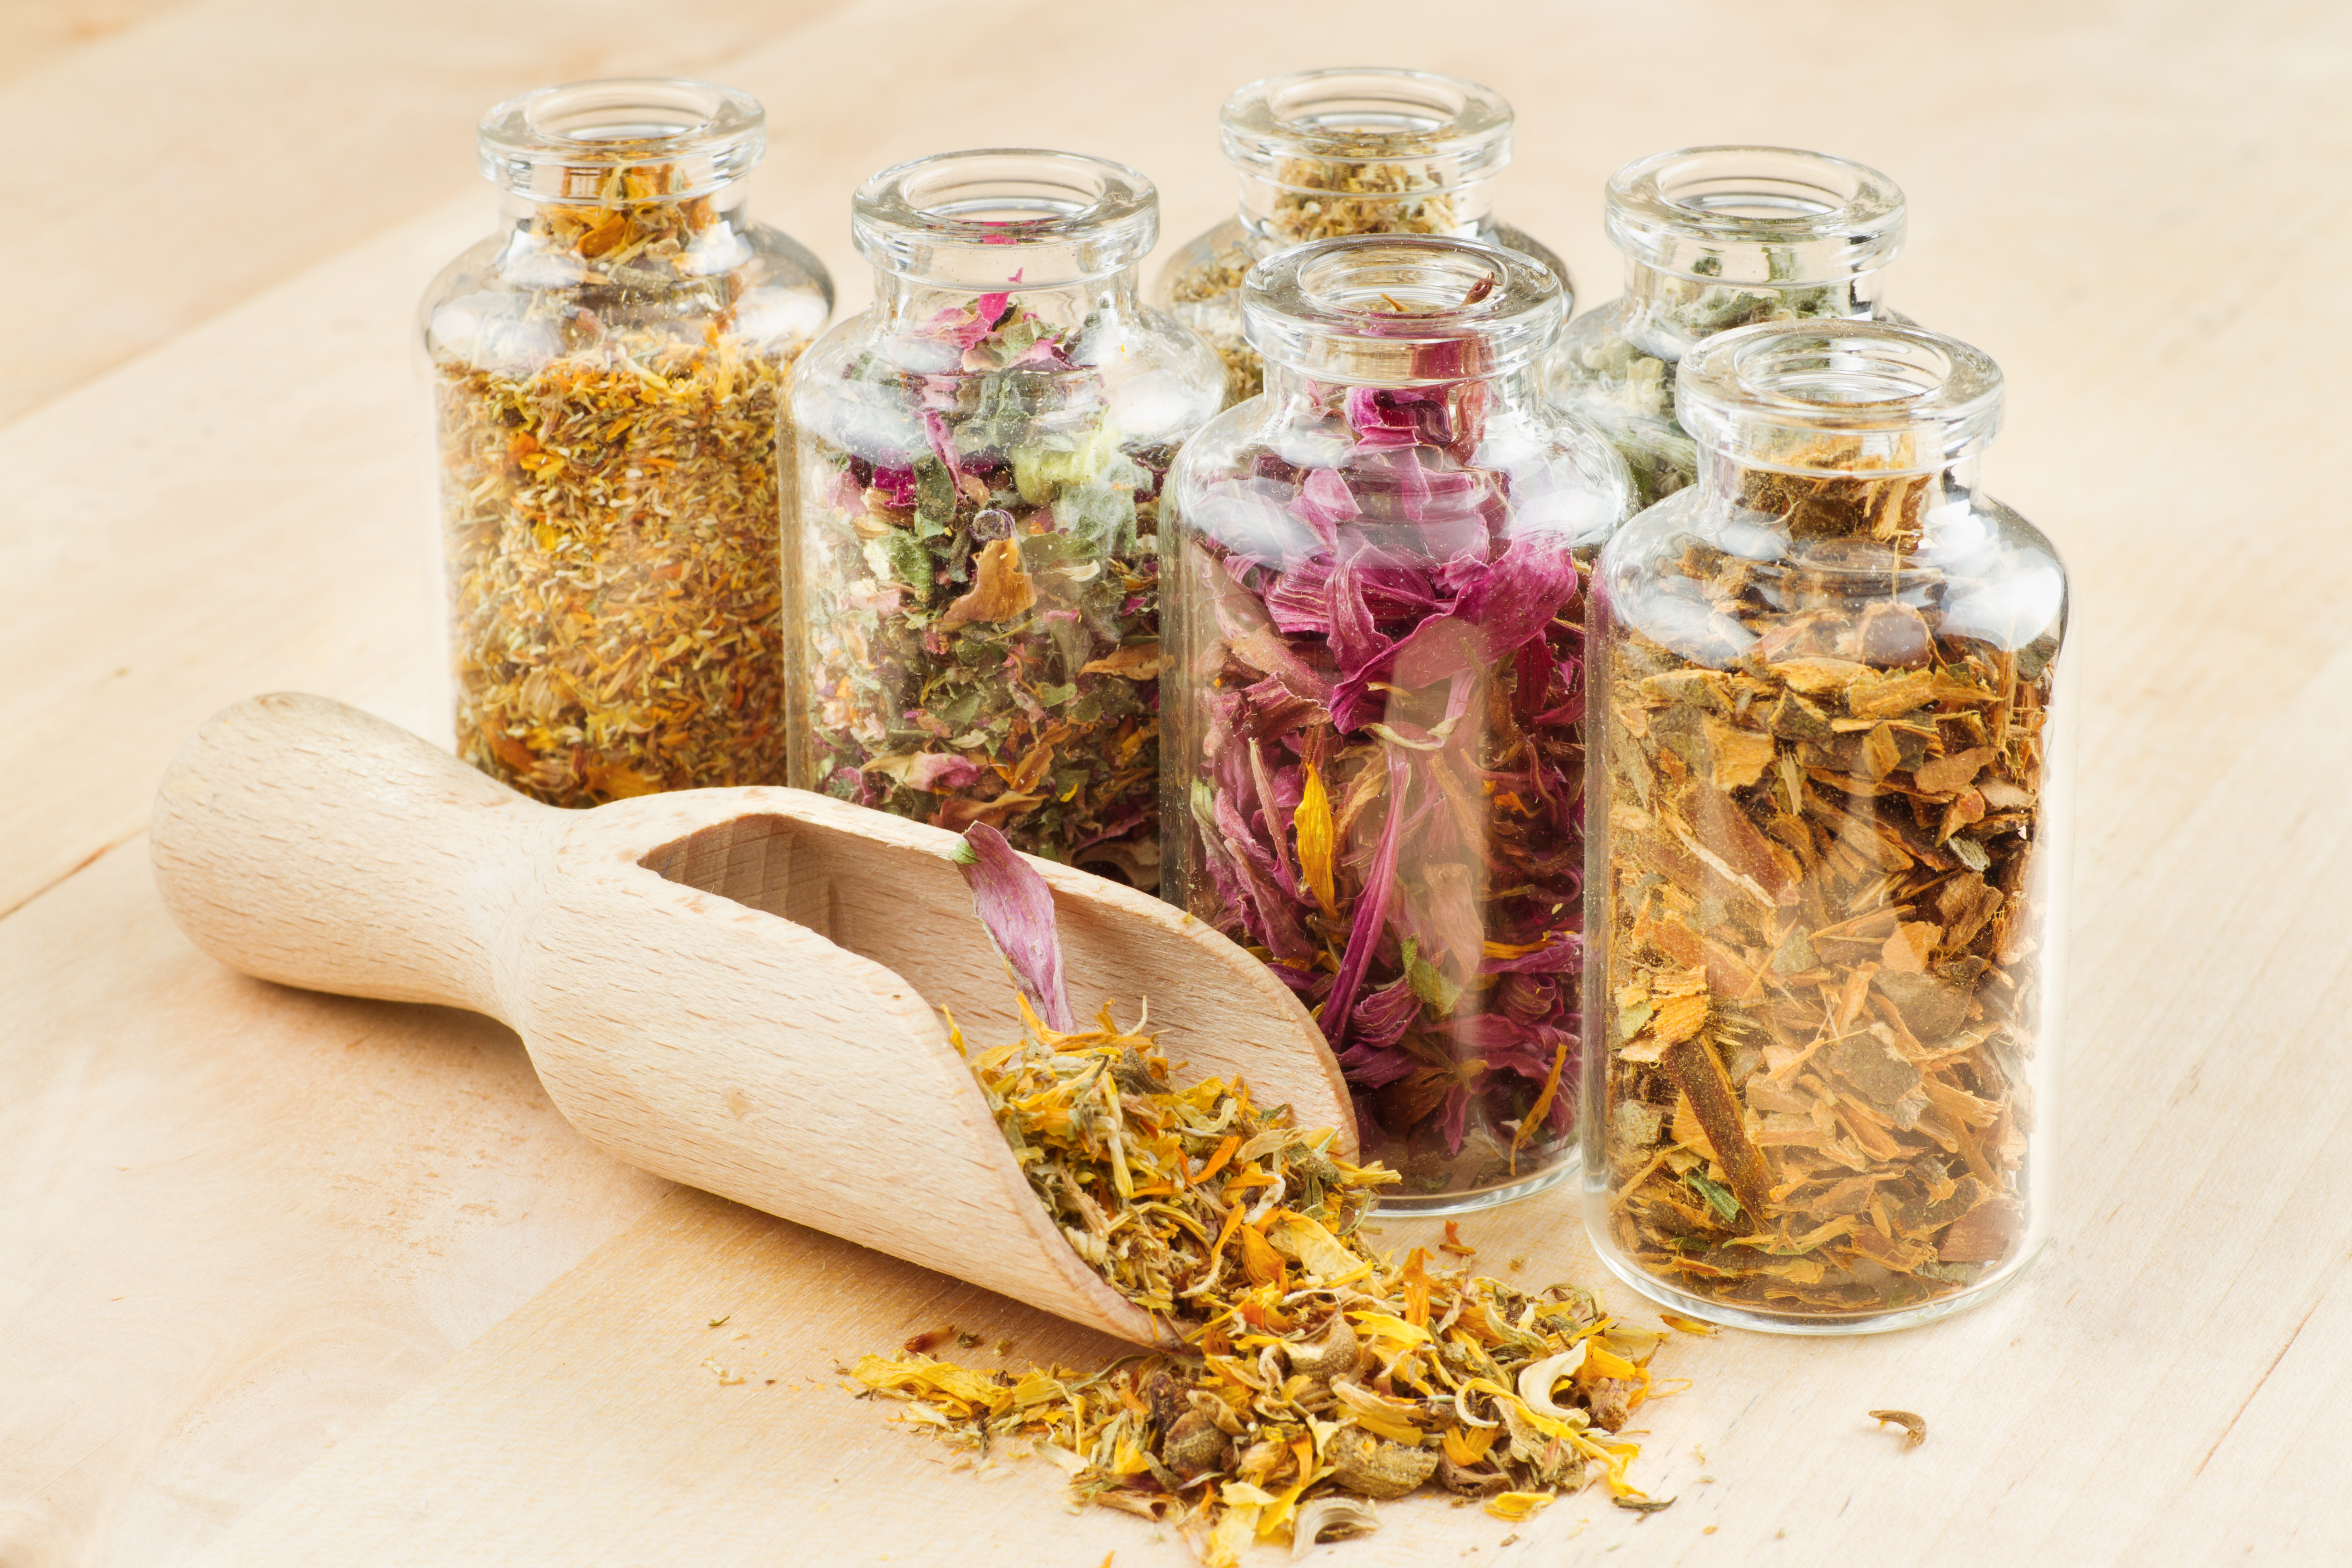 healing herbs in glass bottles and wooden scoop, herbal medicine